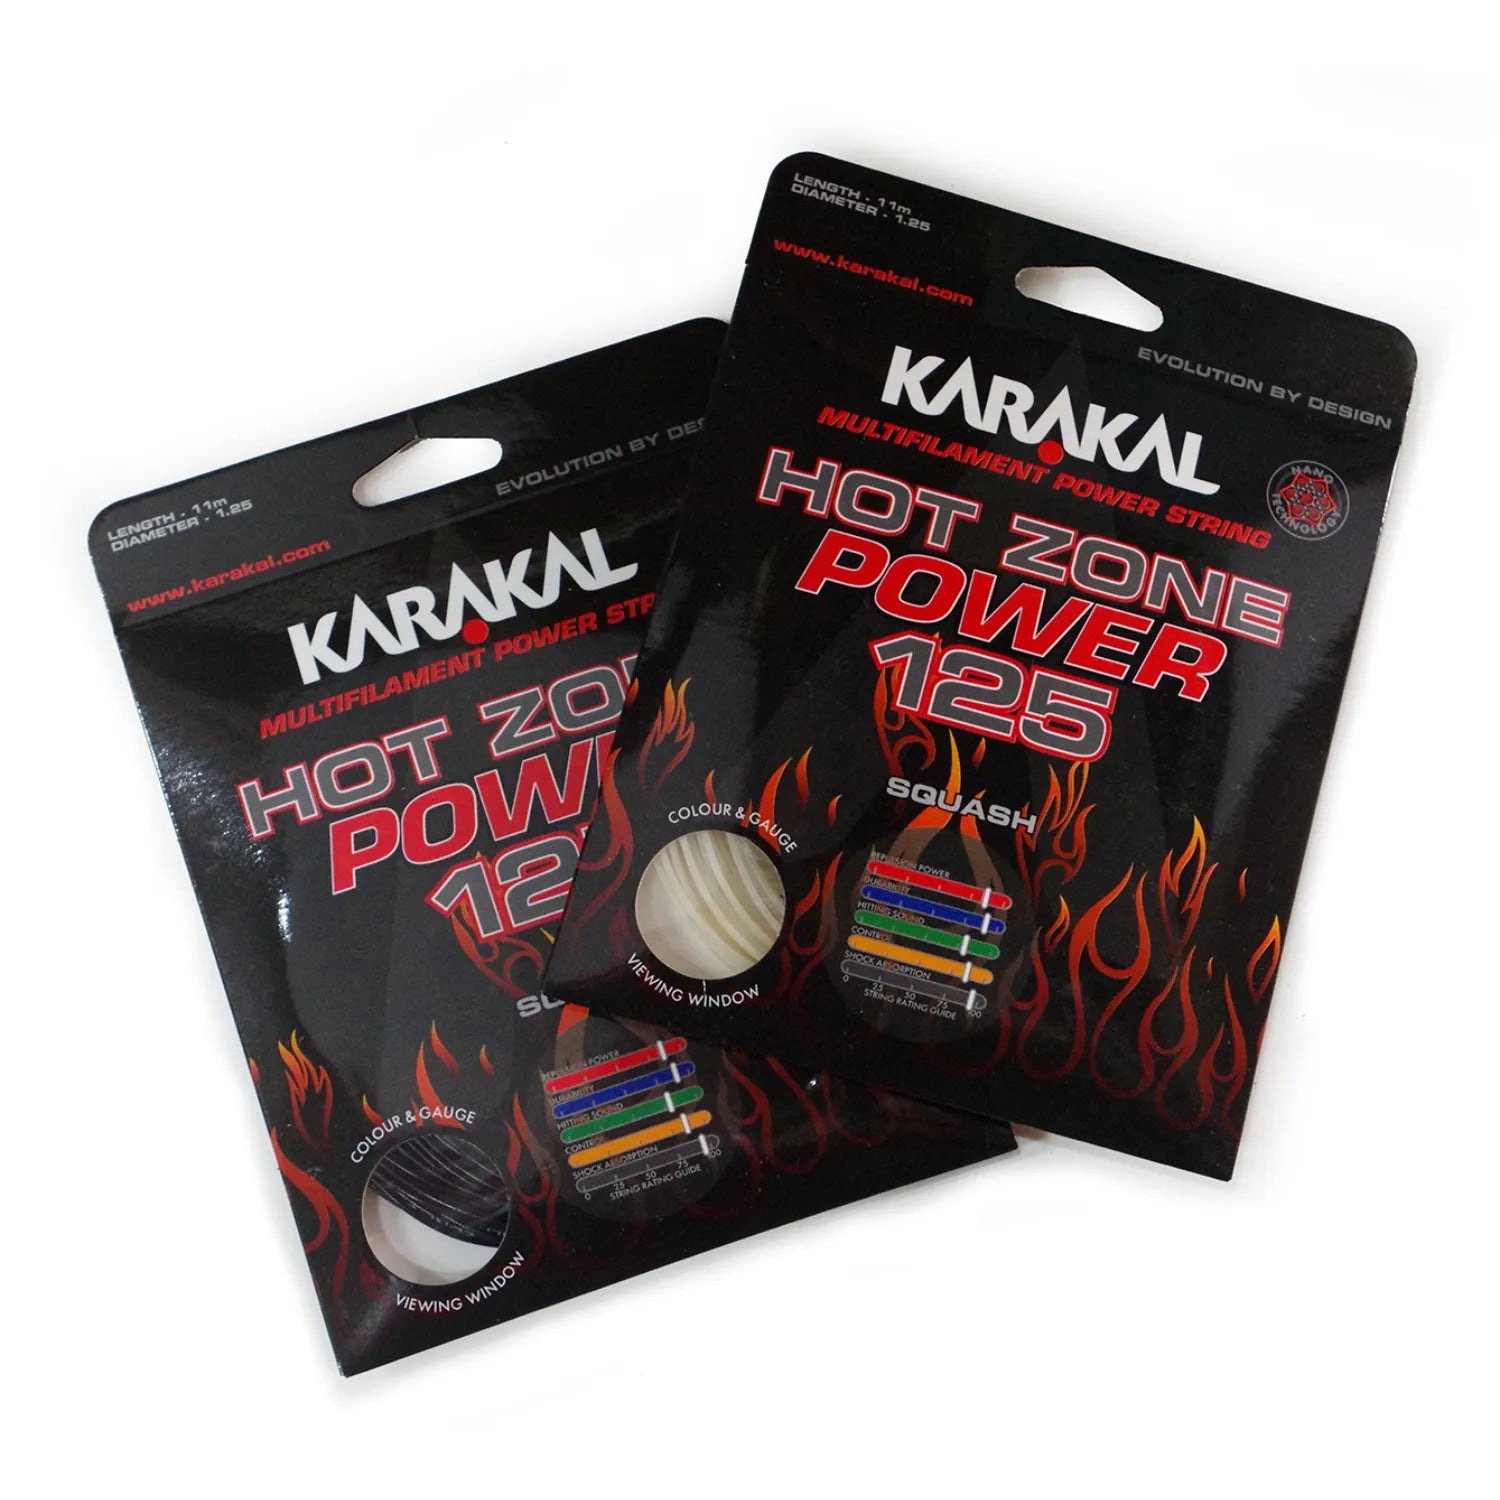 Karakal Hot Zone Power 125 Squash String Sets